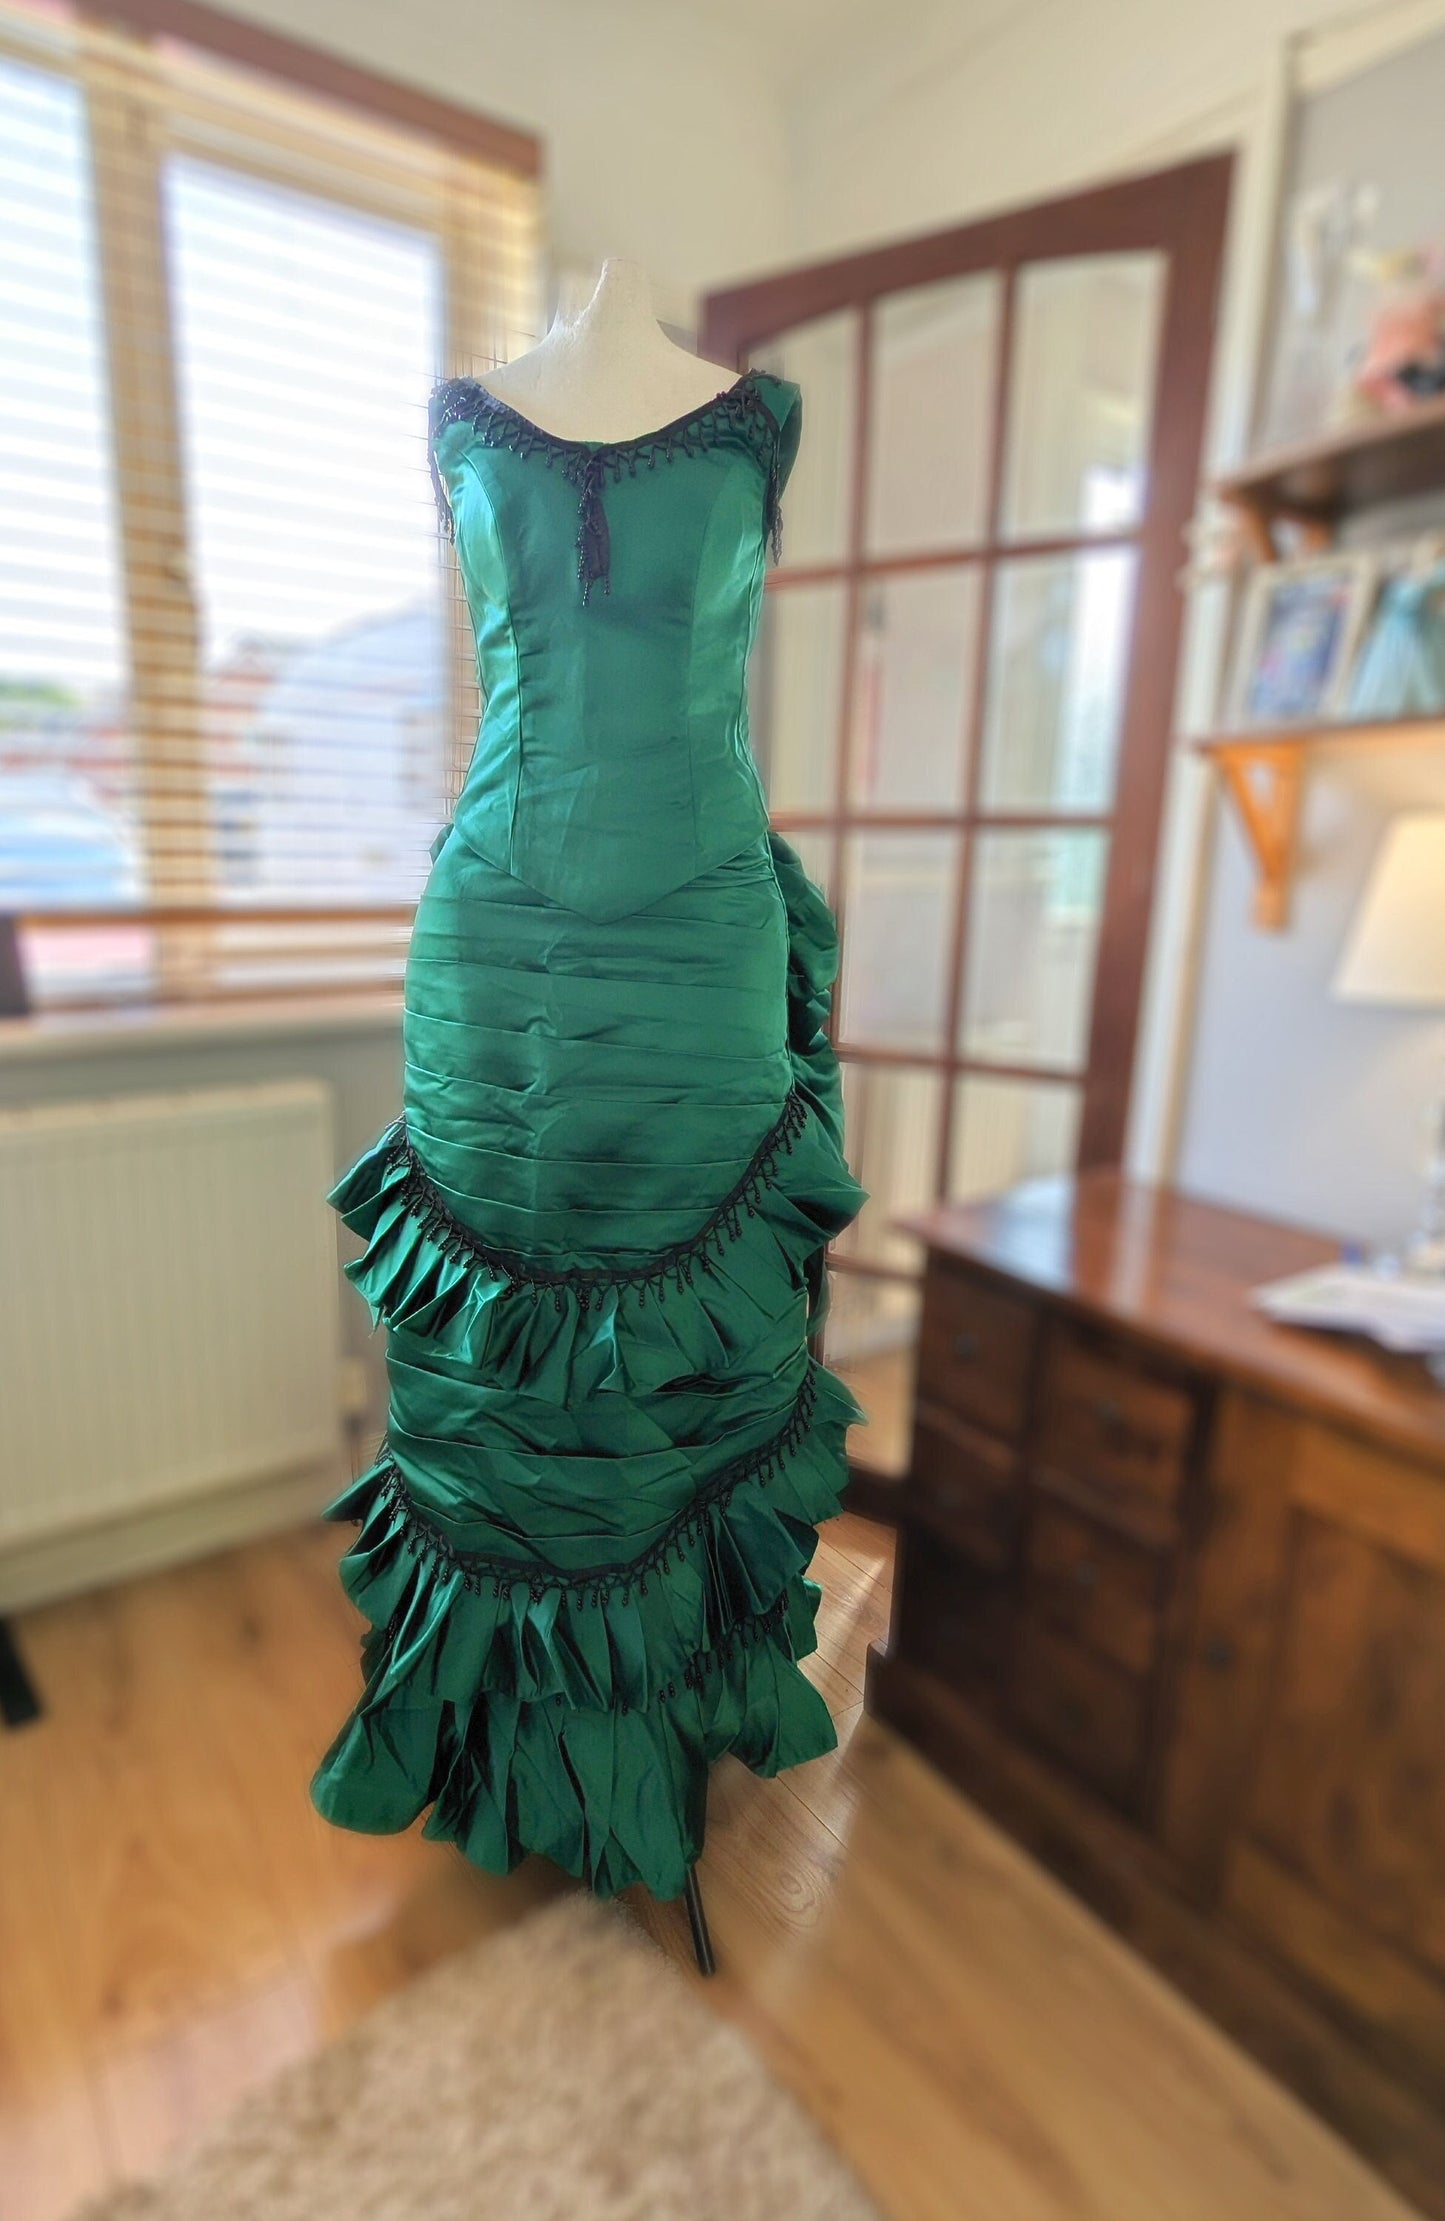 
                  
                    Emerald Green Victorian Dress,Bustle Dress, Victorian Era costume, Victorian dress, Victorian ball gown, Victorian style dress
                  
                